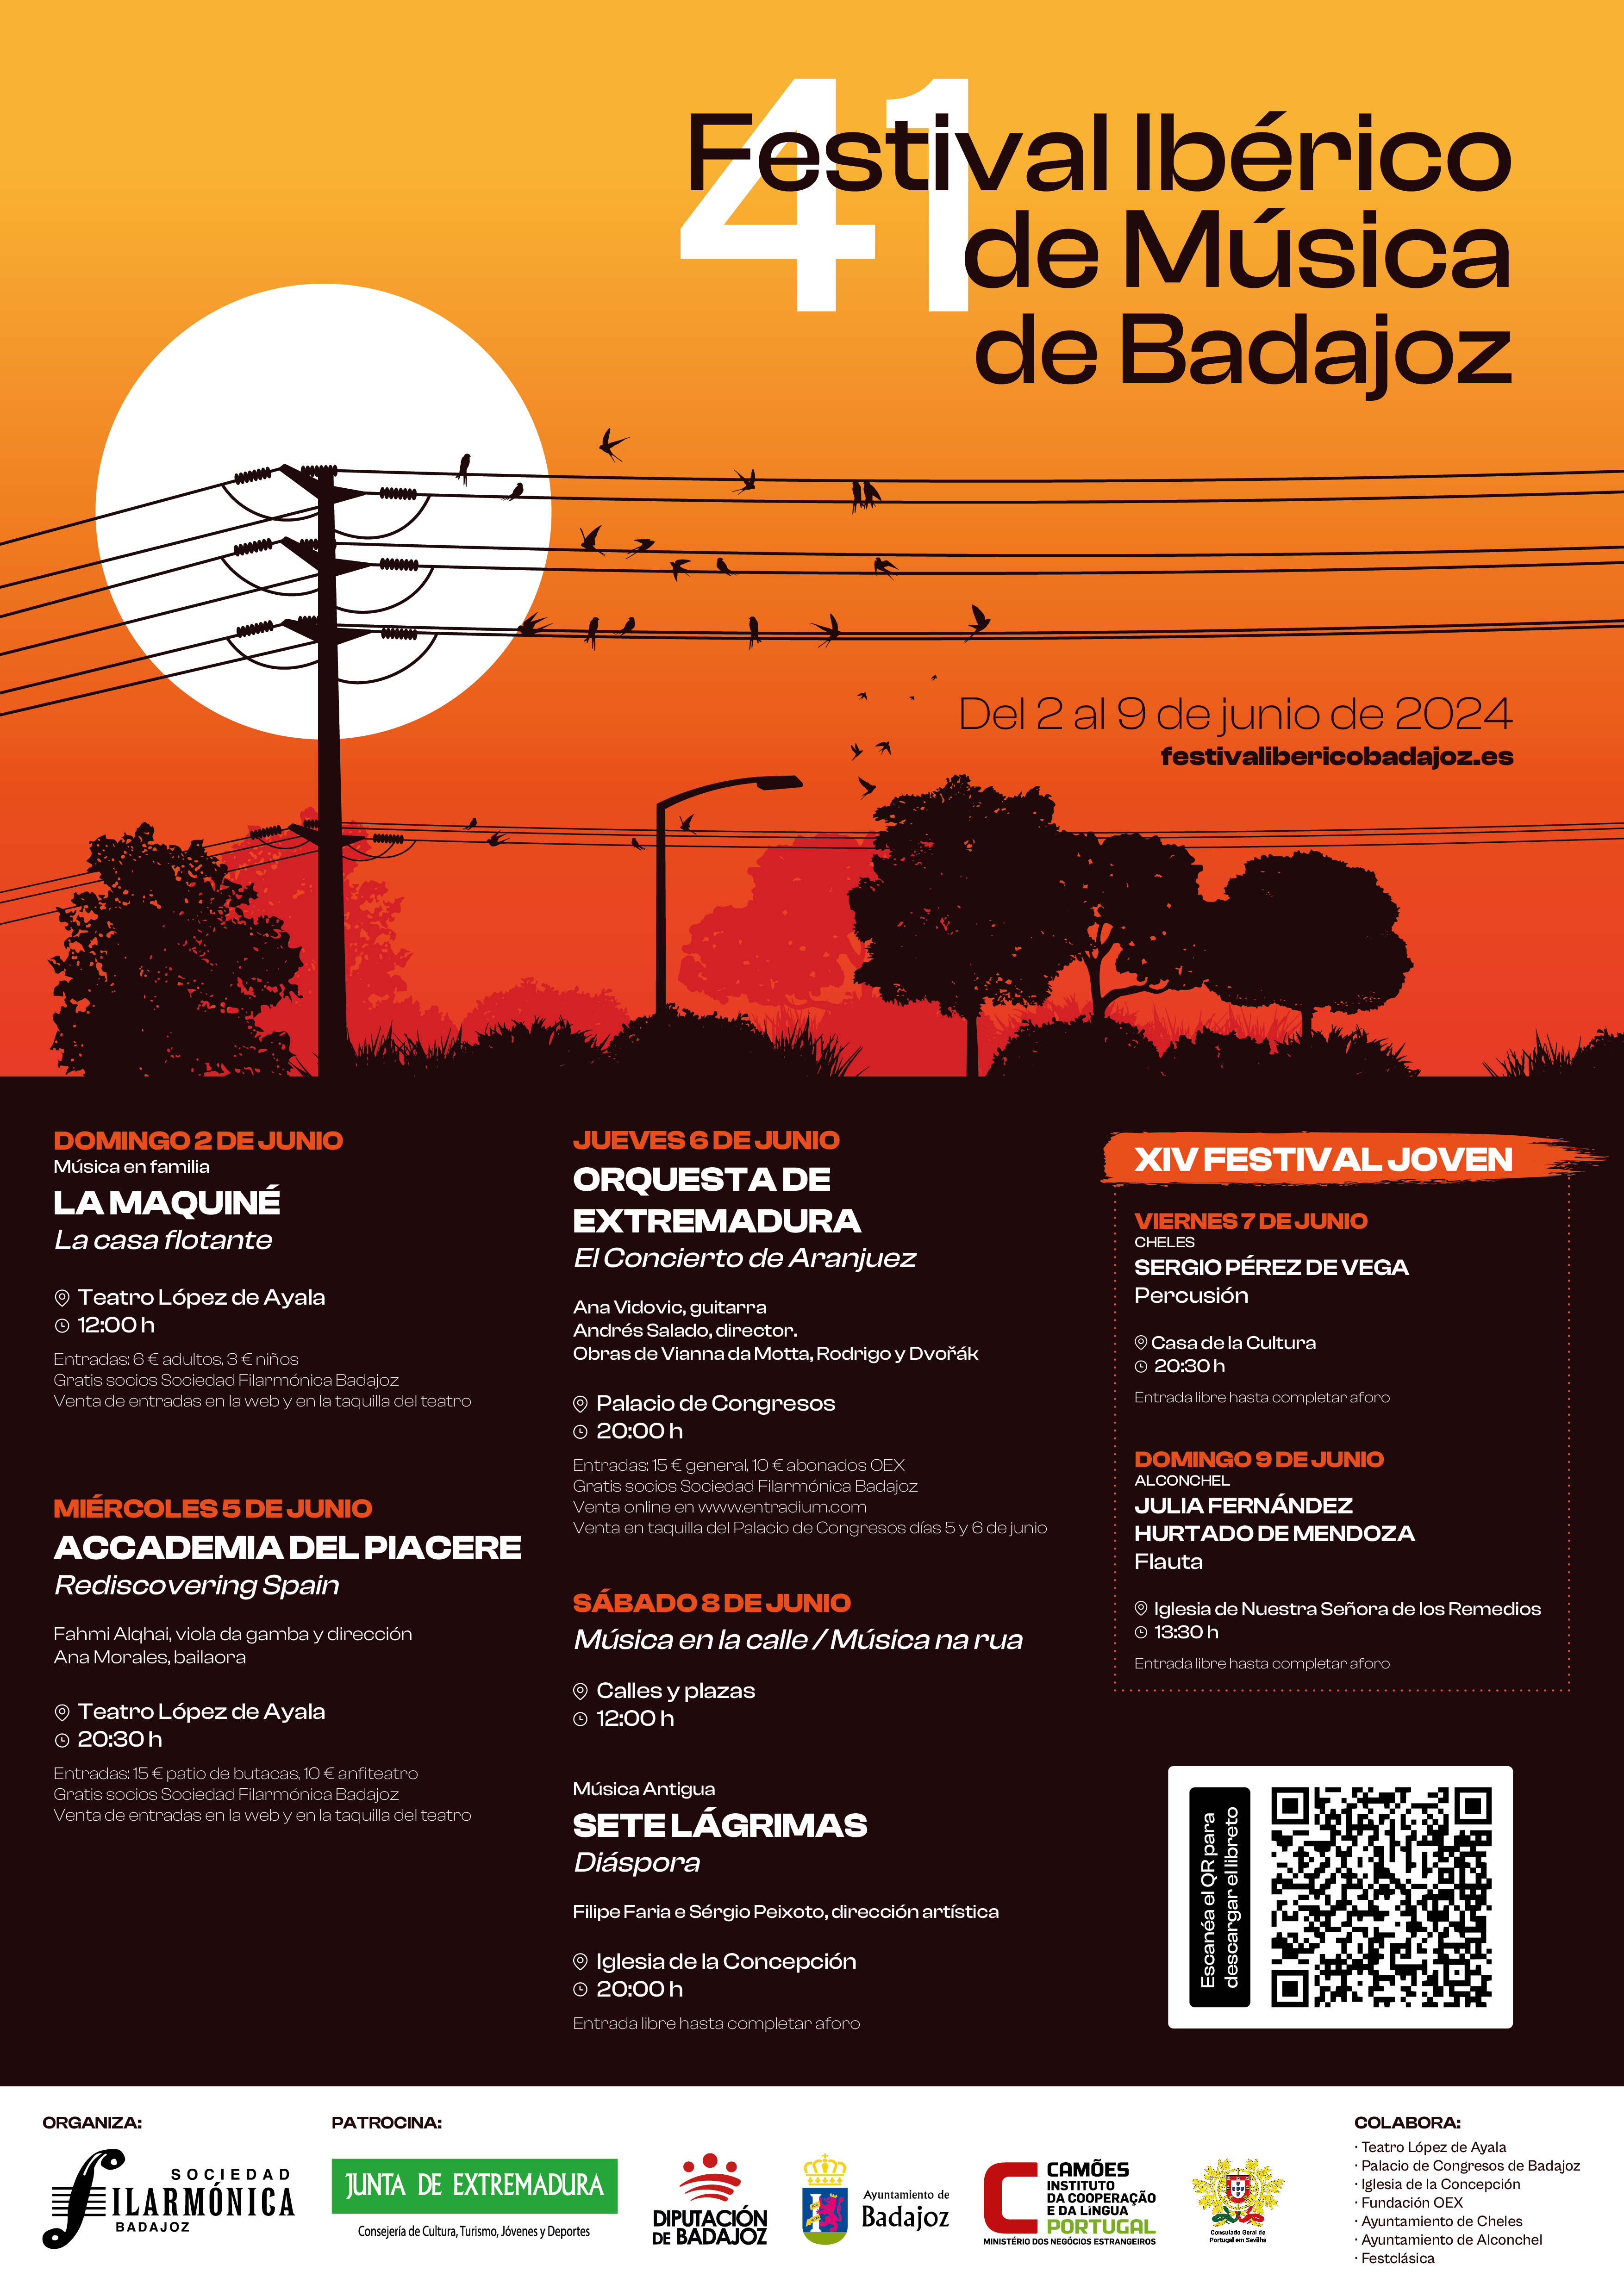 Imagen del artículo El Festival Ibérico de Badajoz redescubre el pasado musical de España y Portugal con Accademia del Piacere, Siete Lágrimas y la OEx